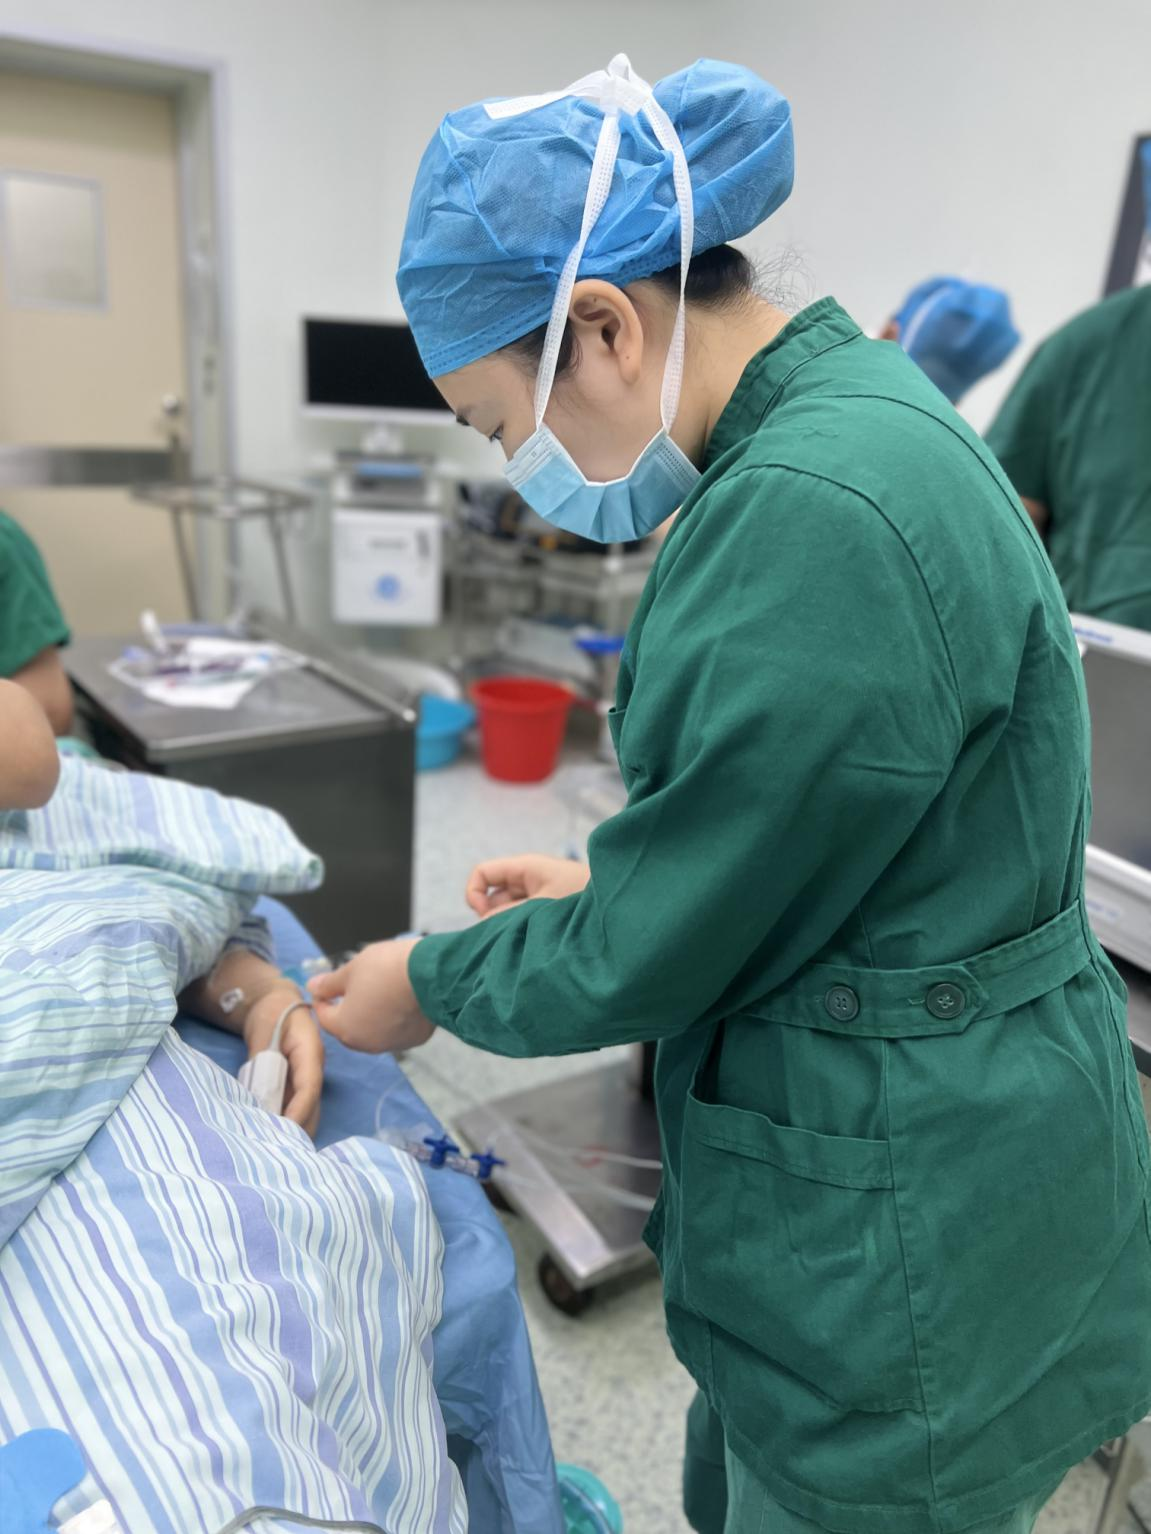 【5•12护士节】护士的细心、耐心、责任心_病人